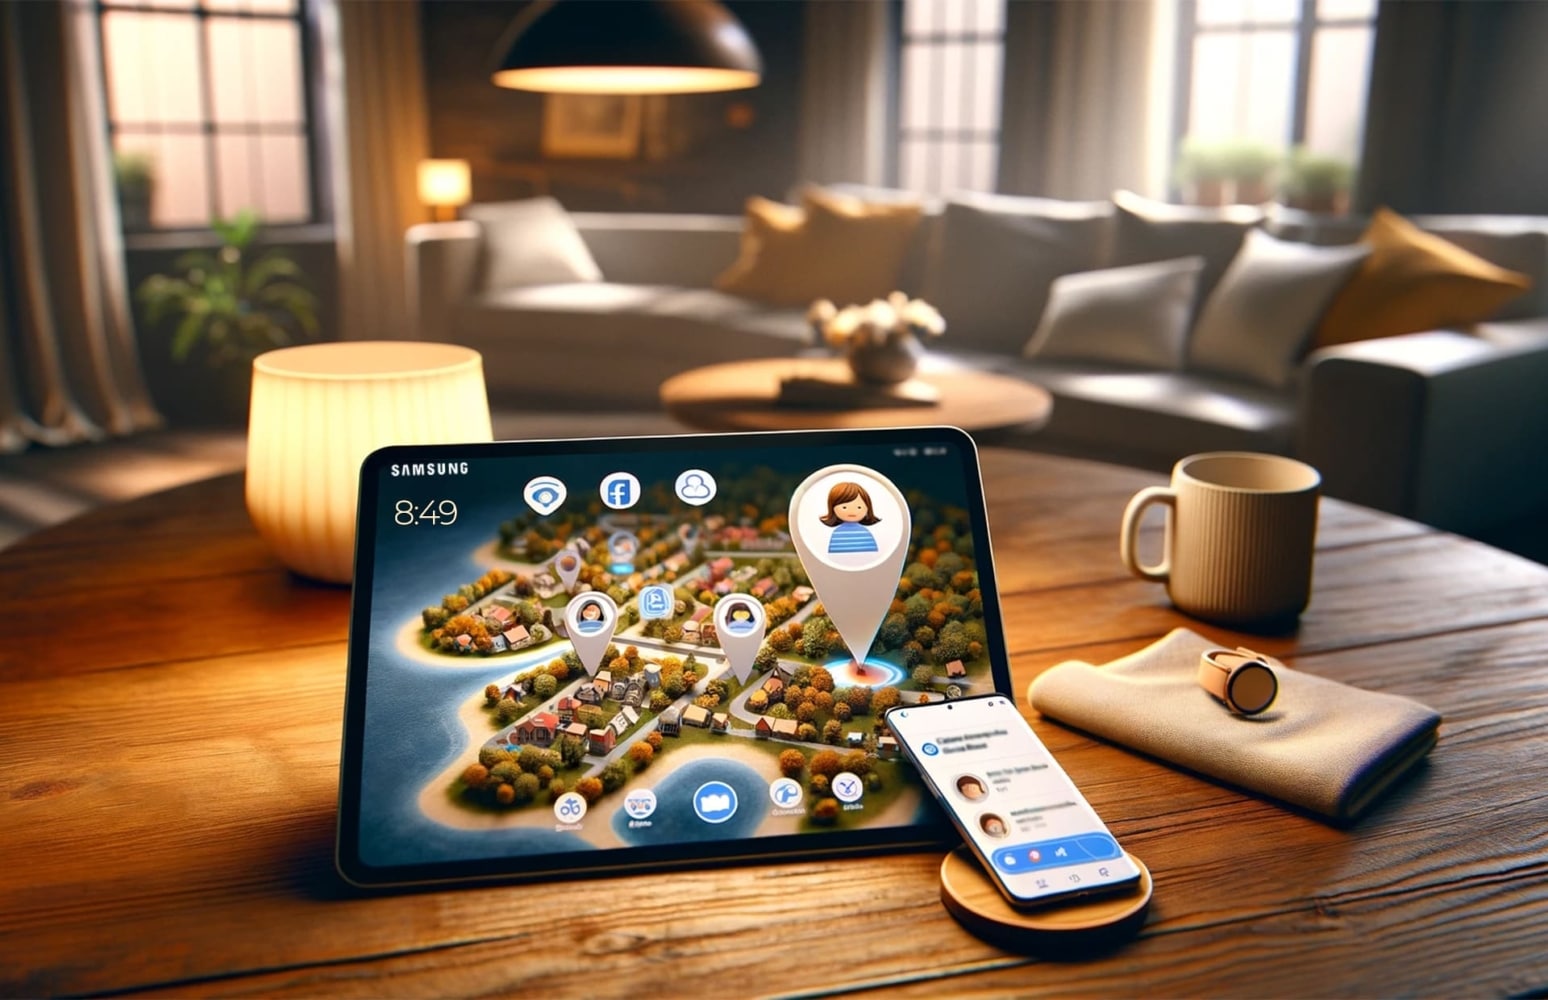 Nella stanza, un tablet Samsung con una mappa aperta che mostra il terreno con alberi, case e segni di geolocalizzazione è appoggiato su un tavolo, con un telefono acceso accanto